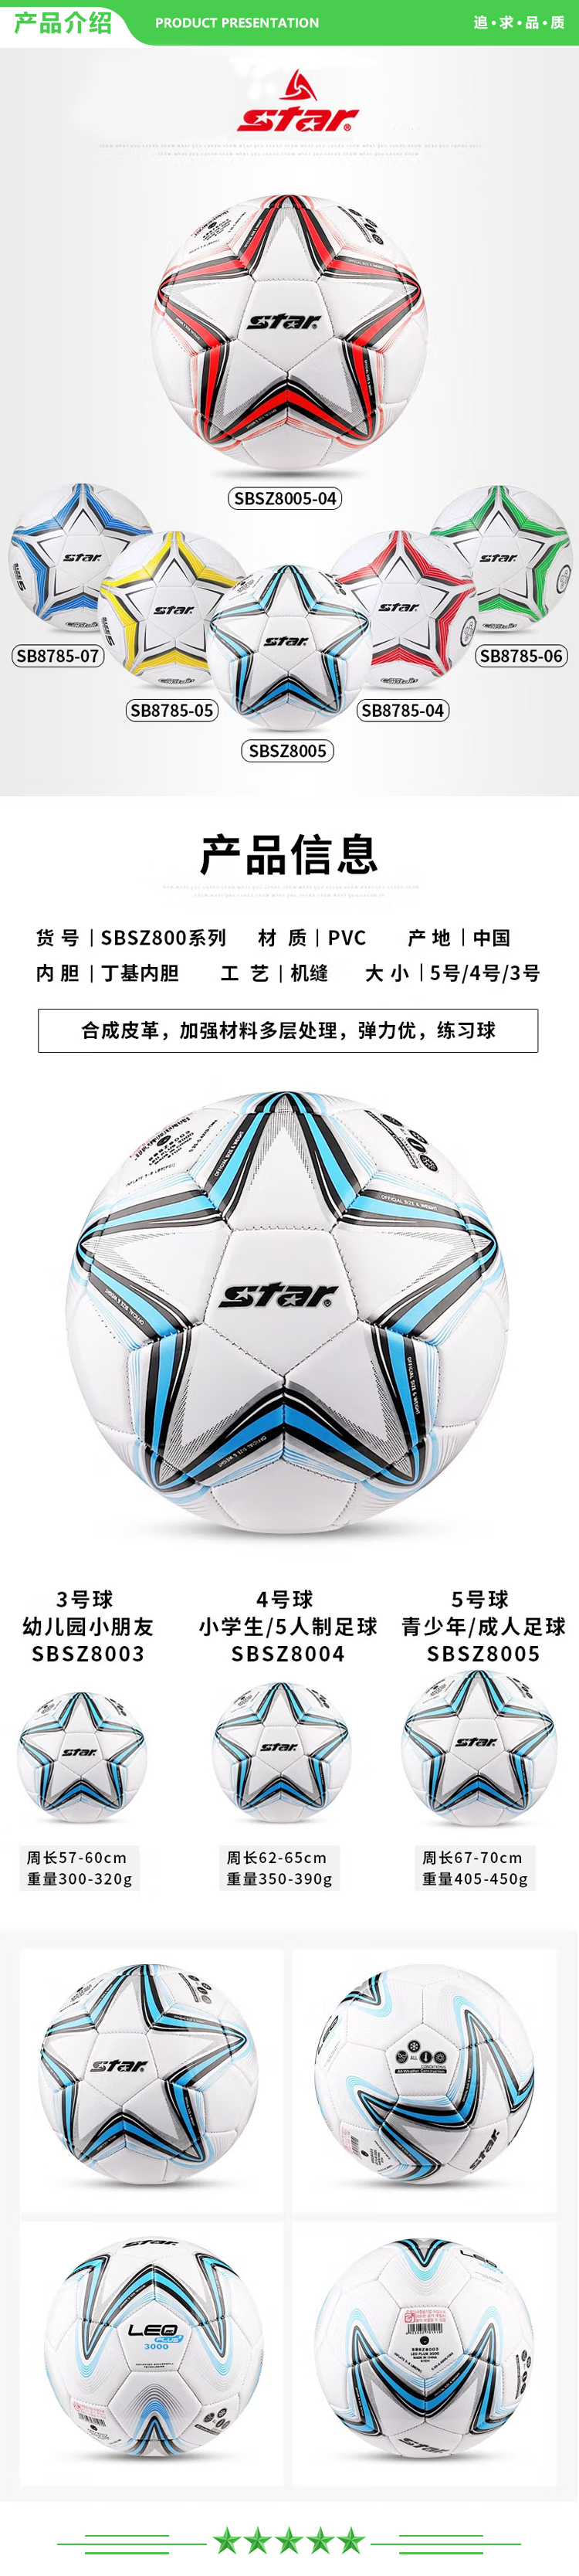 世达 star SBSZ8004【入门款】蓝色 4号 足球 小学生青少年训练用球.jpg